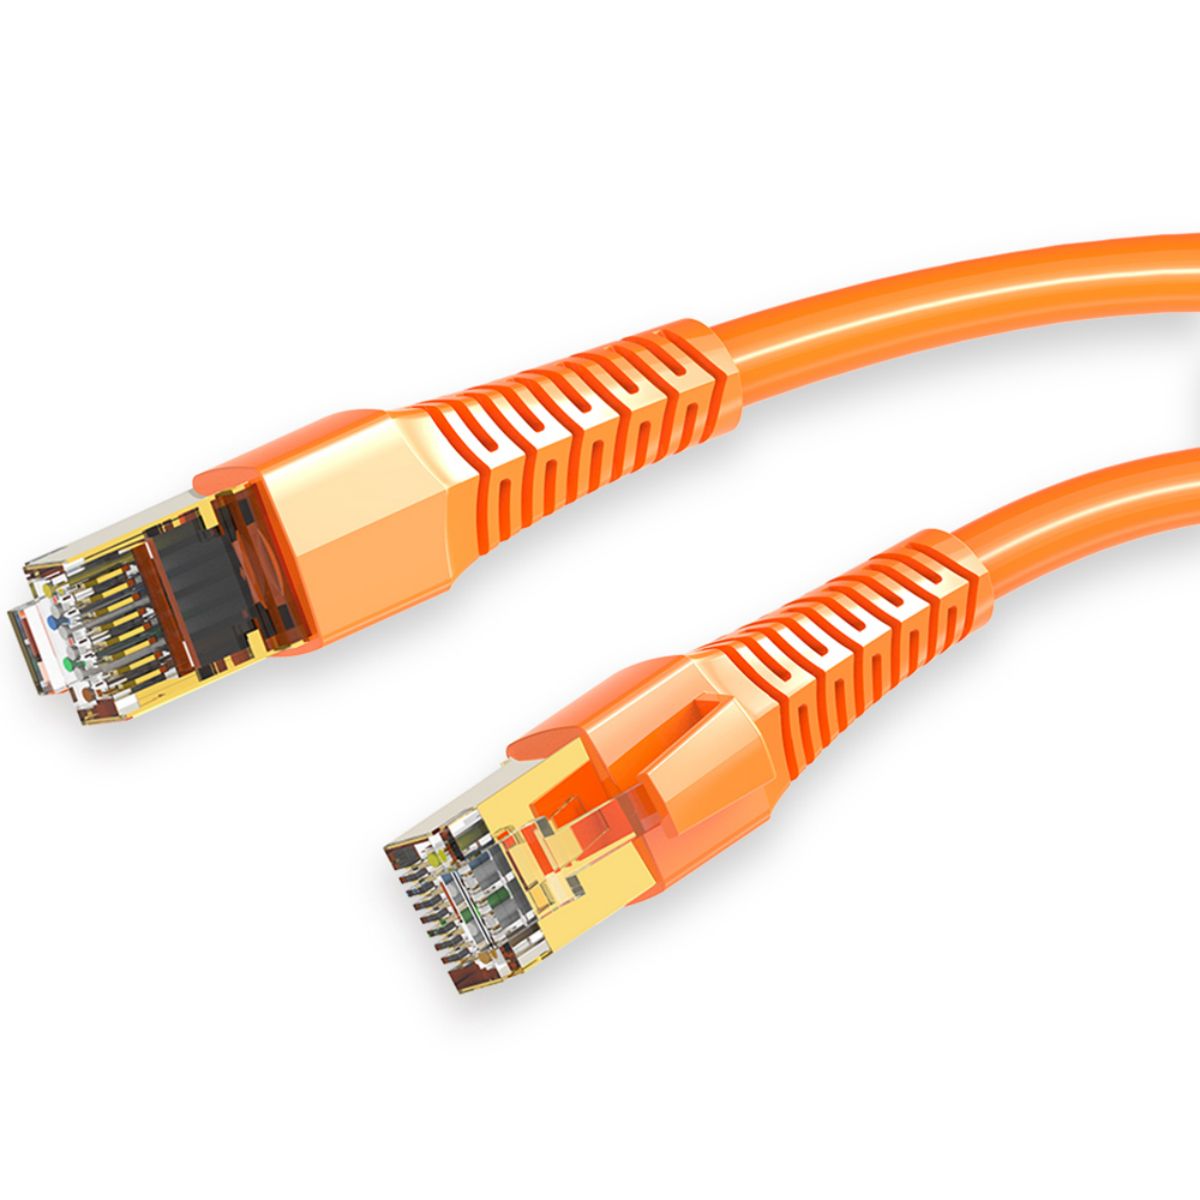 Coteci CTA8 Class 10 Gigabit Ethernet Cable 2M